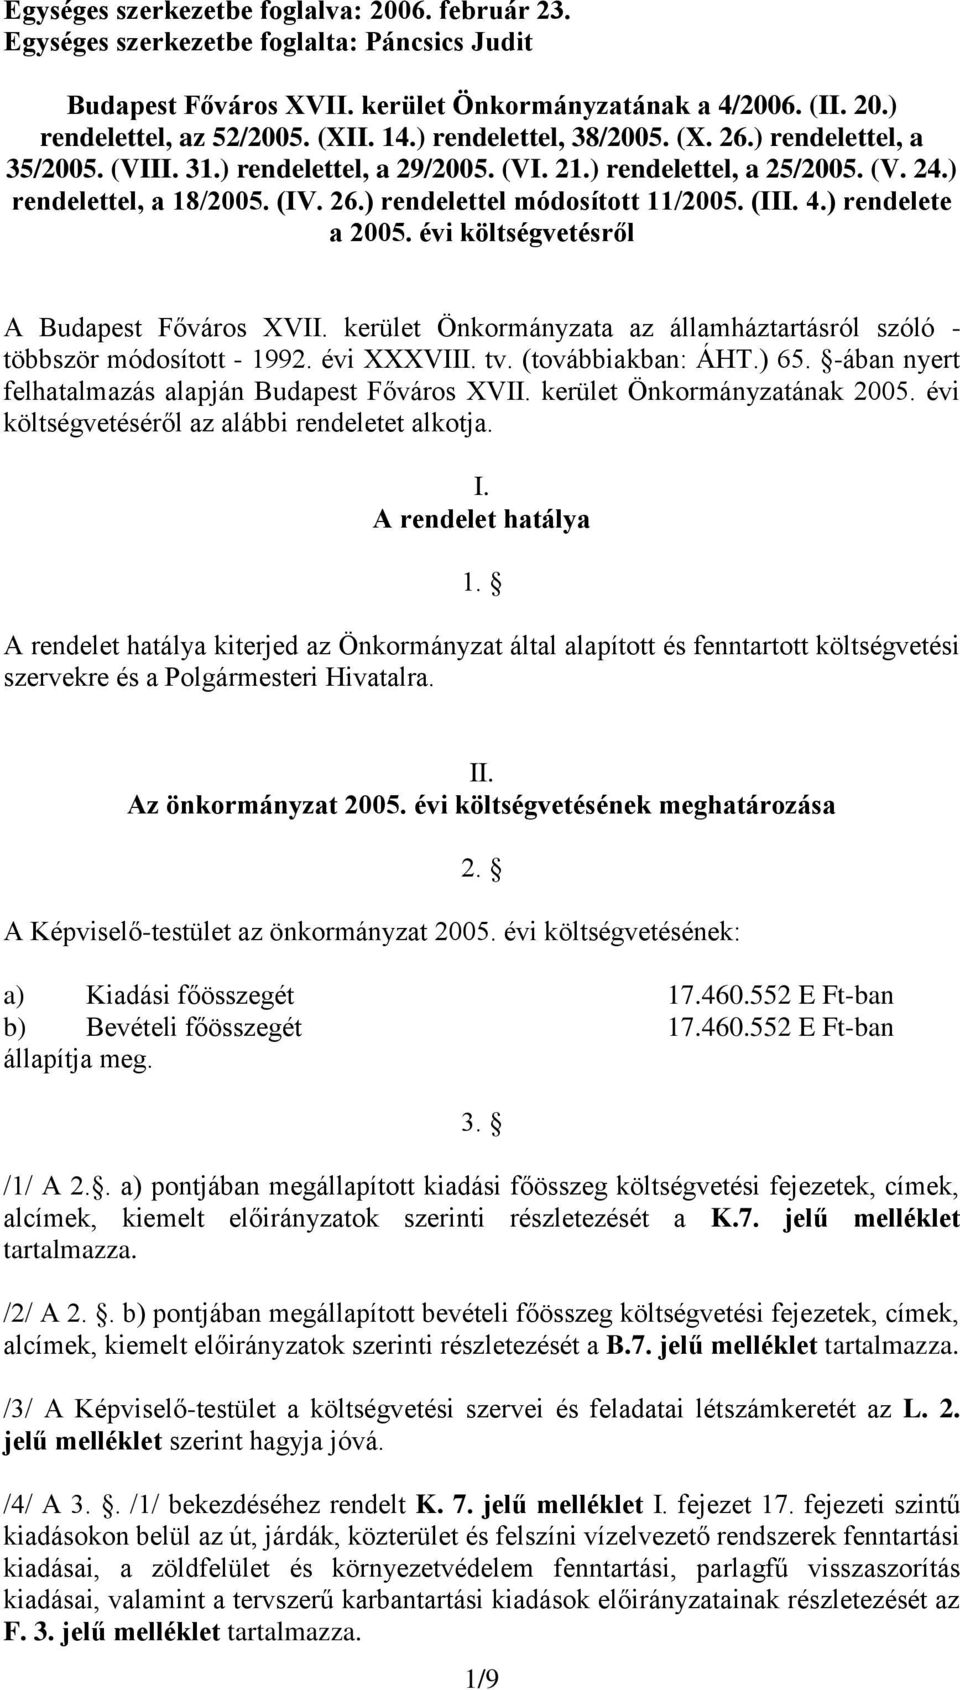 (III. 4.) rendelete a 2005. évi költségvetésről A Budapest Főváros XVII. kerület Önkormányzata az államháztartásról szóló - többször módosított - 1992. évi XXXVIII. tv. (továbbiakban: ÁHT.) 65.